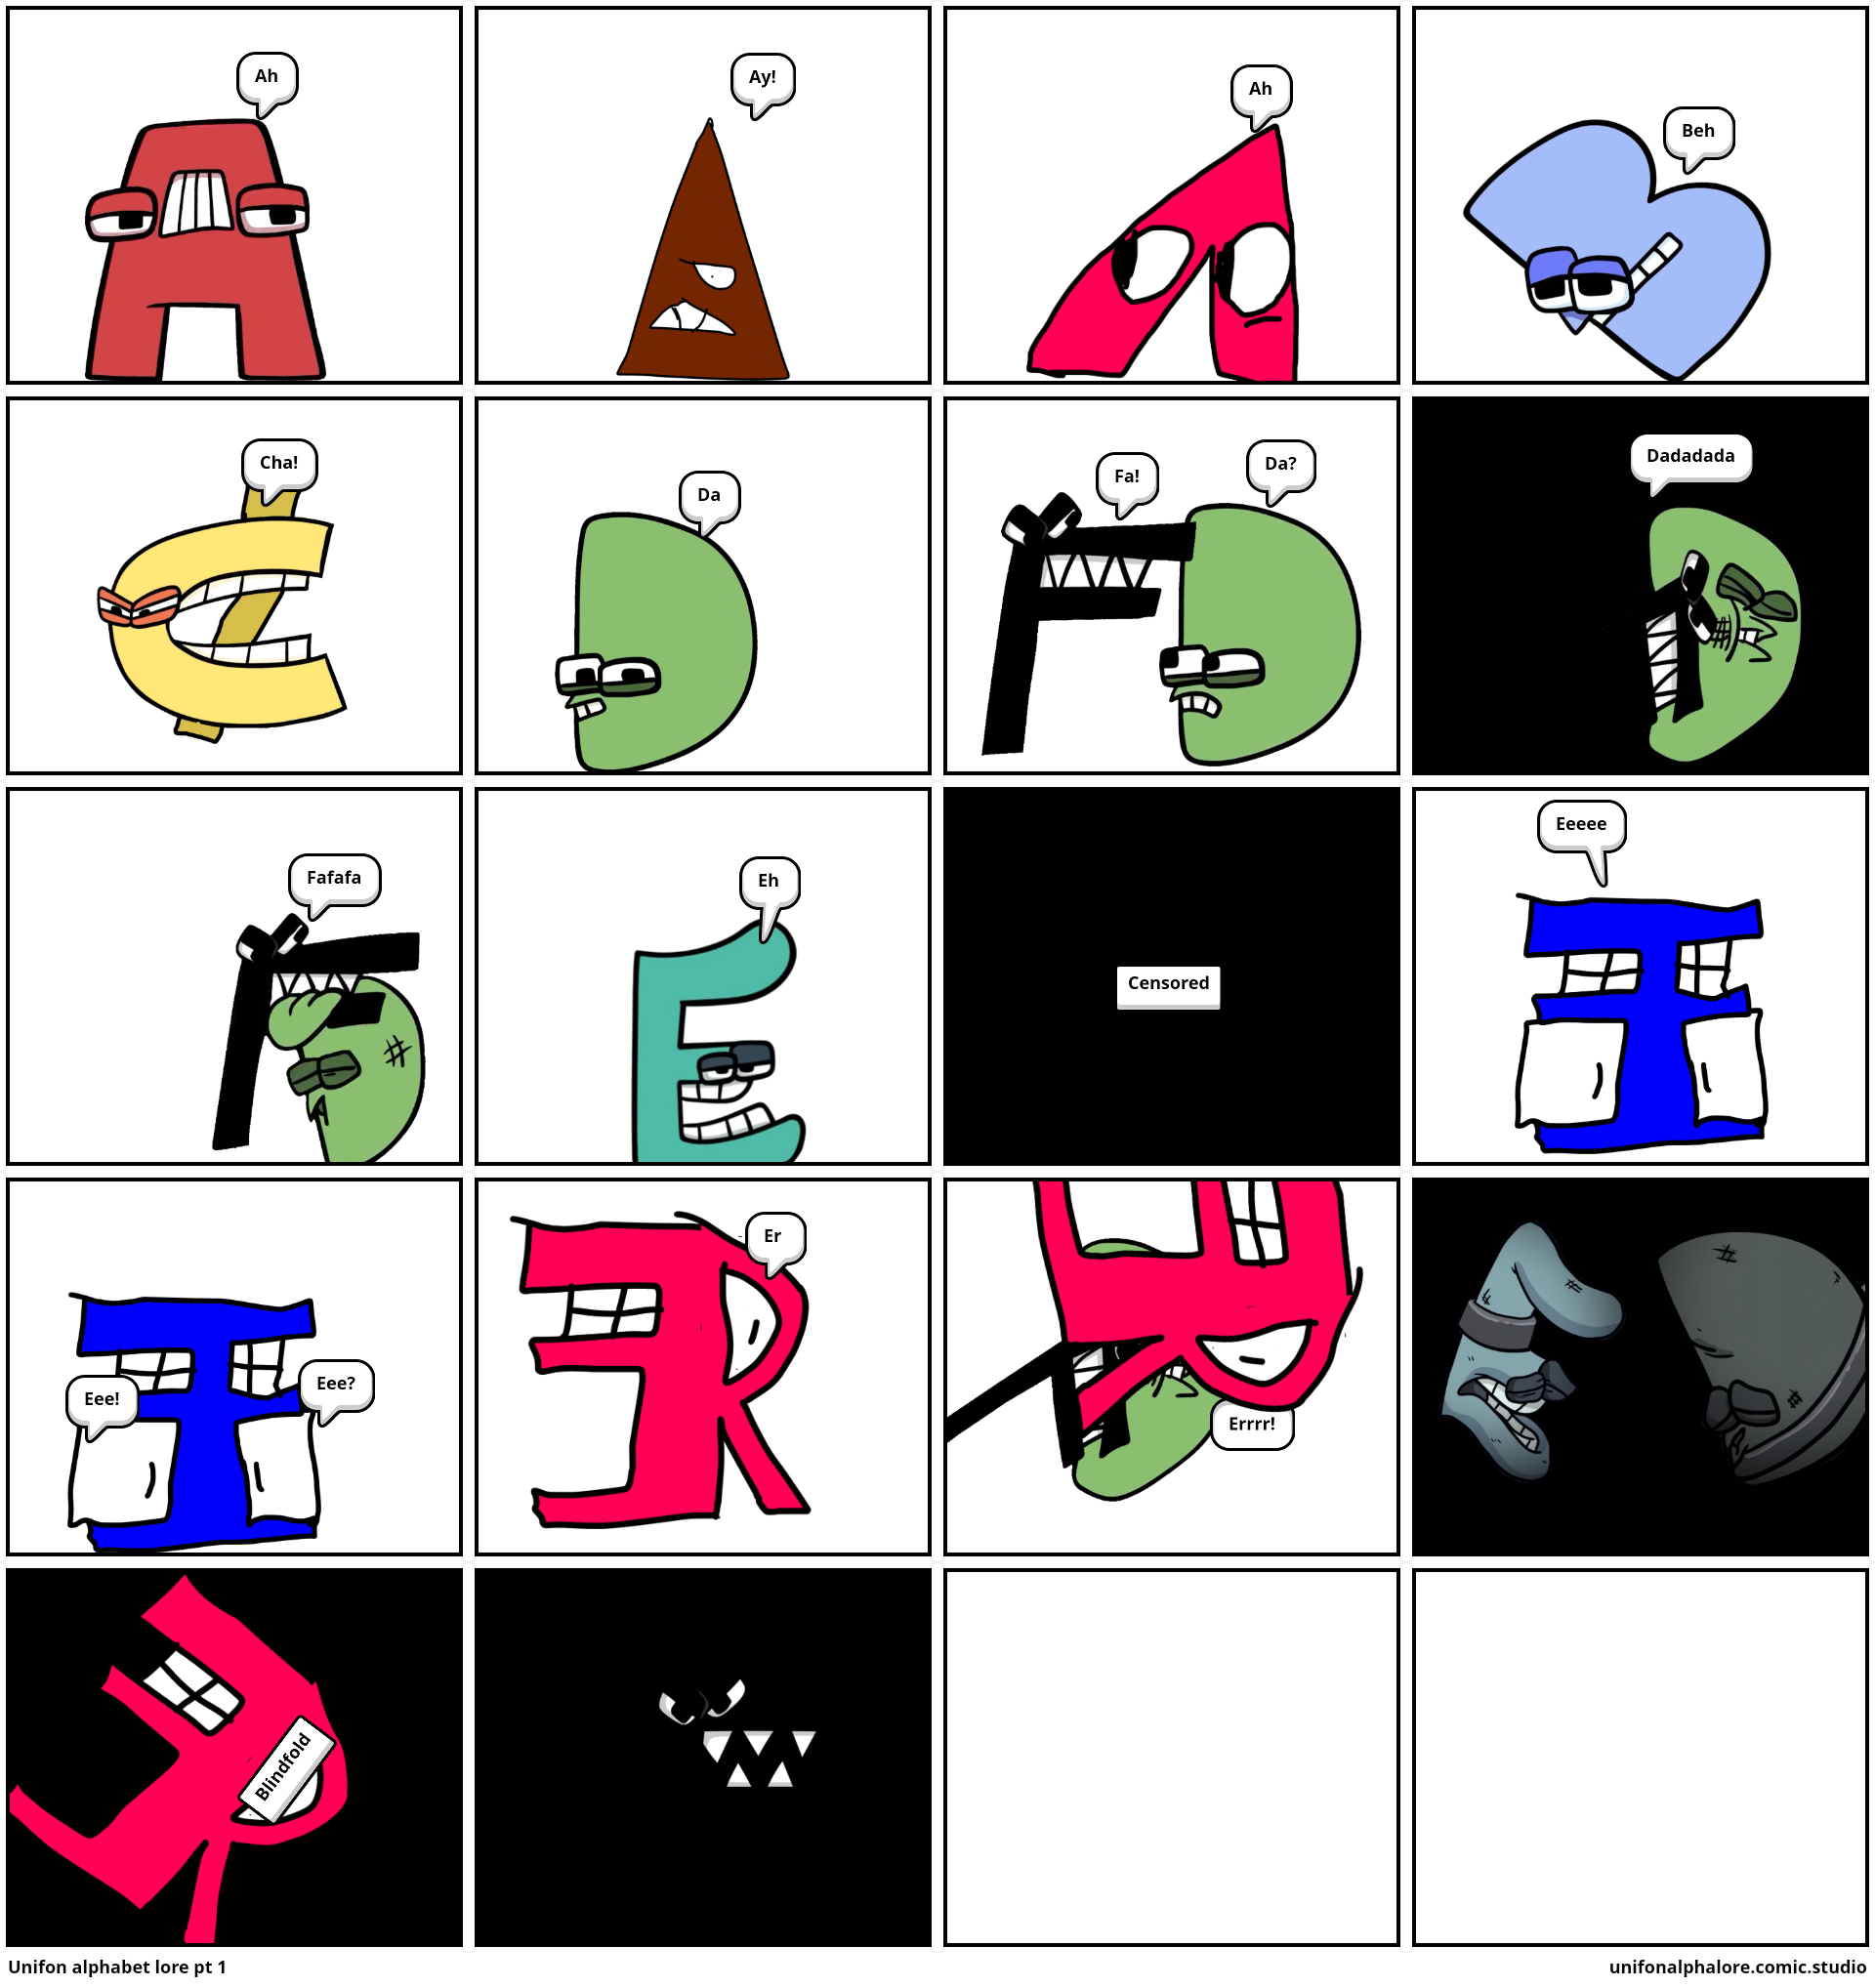 English Letters Found In The Unifon Alphabet Lore! - Comic Studio